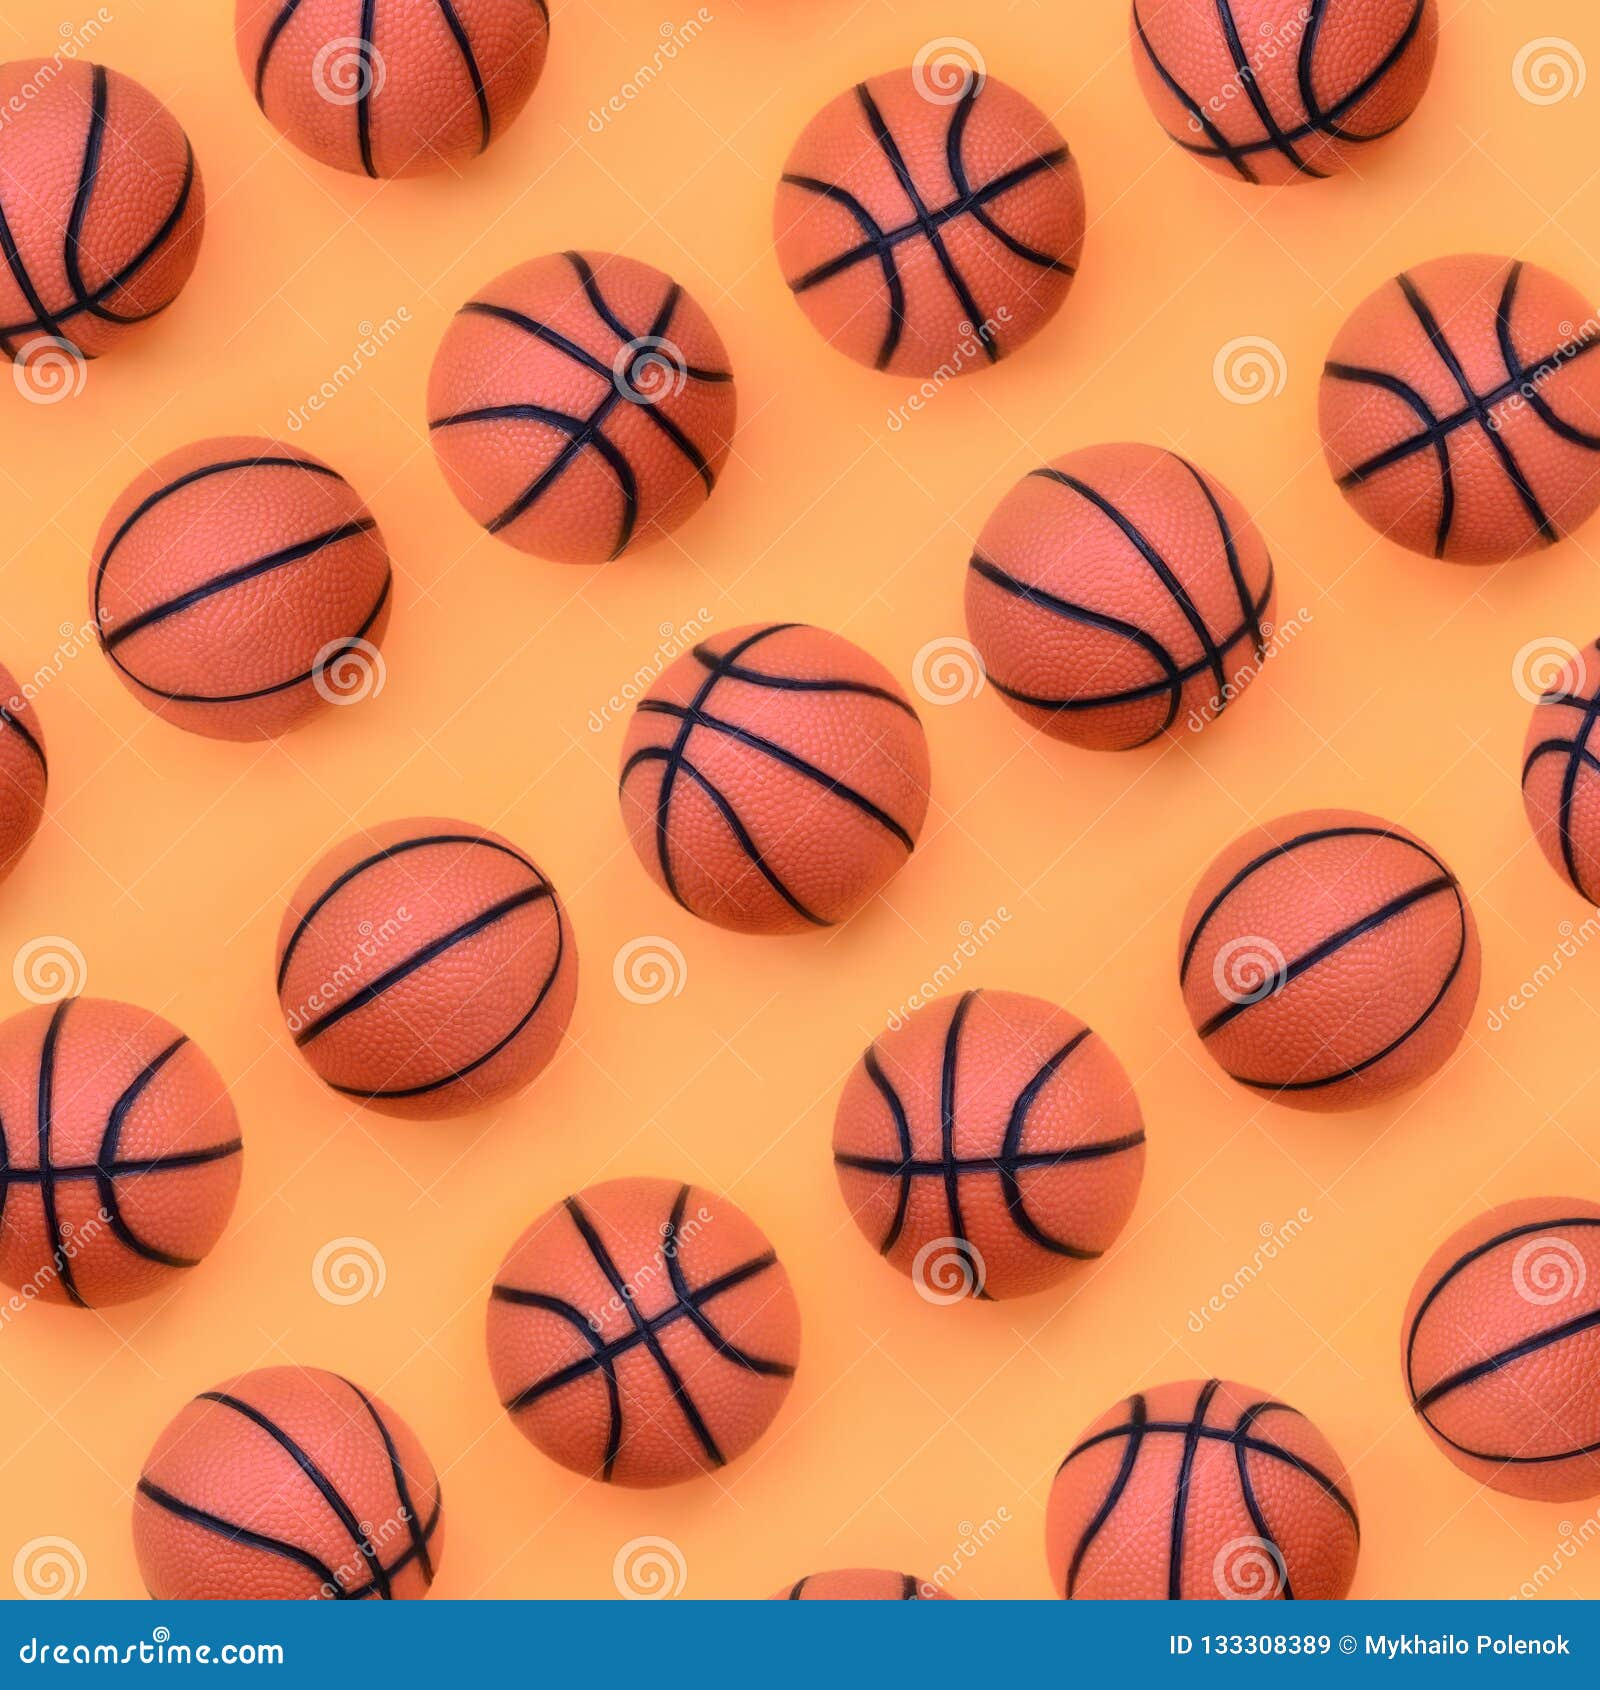 Beaucoup De Petites Boules Oranges Pour Le Jeu De Sport De Basket-ball Se  Trouve Sur Le Fond De Texture Du Papier Orange En Paste Image stock - Image  du bruit, moderne: 133308389